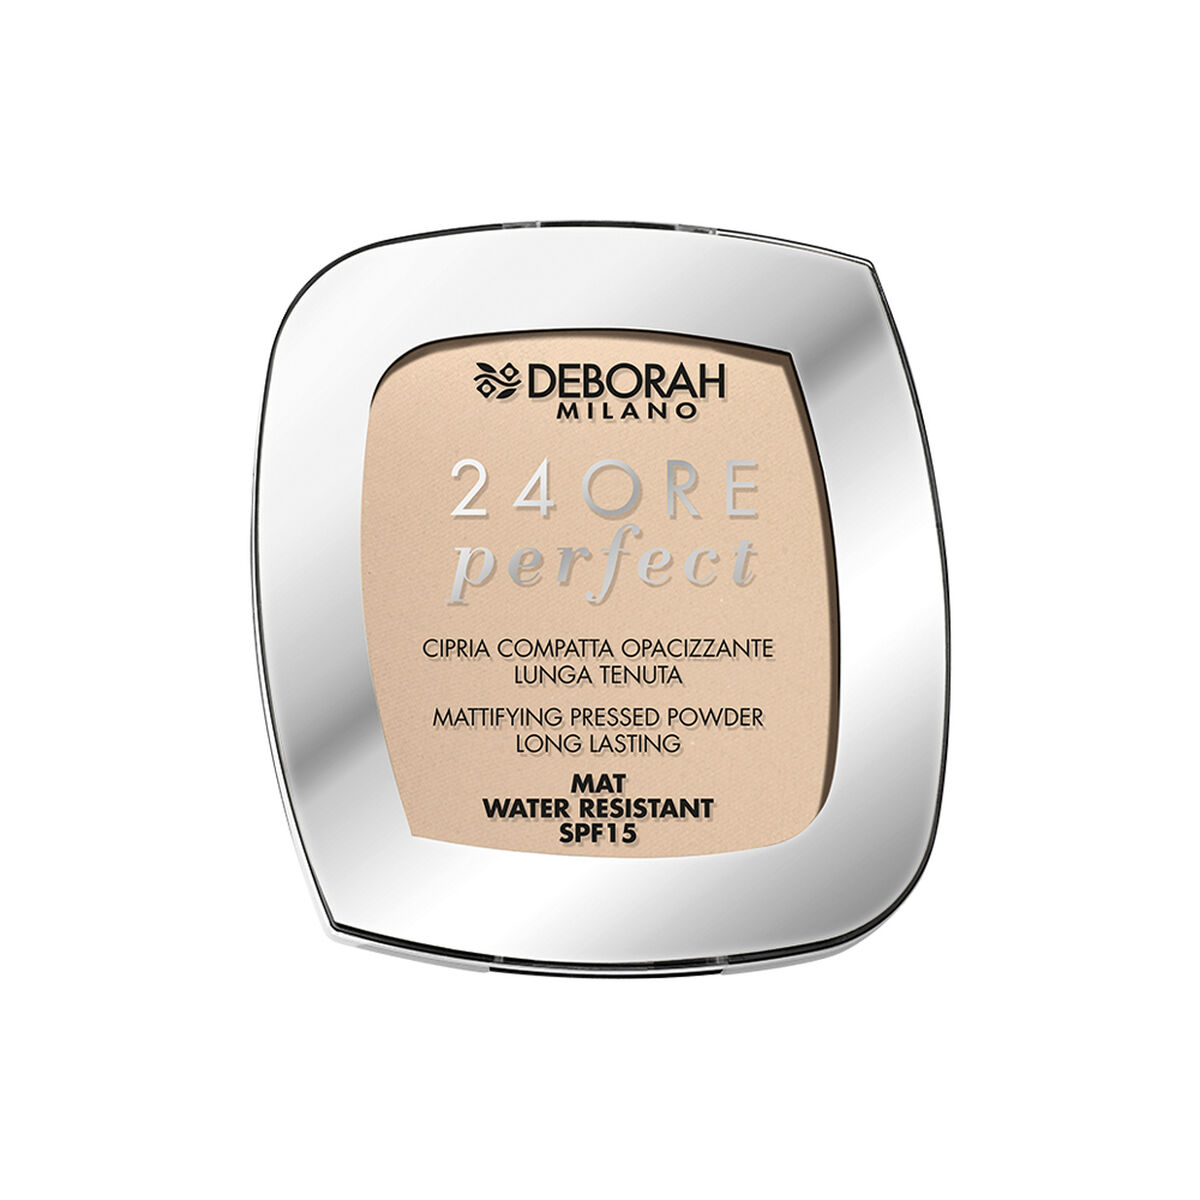 Osta tuote Kompaktipuuterit Deborah 24ore Perfect Nº 01 Light Beige Spf 15 verkkokaupastamme Korhone: Parfyymit & Kosmetiikka 10% alennuksella koodilla KORHONE